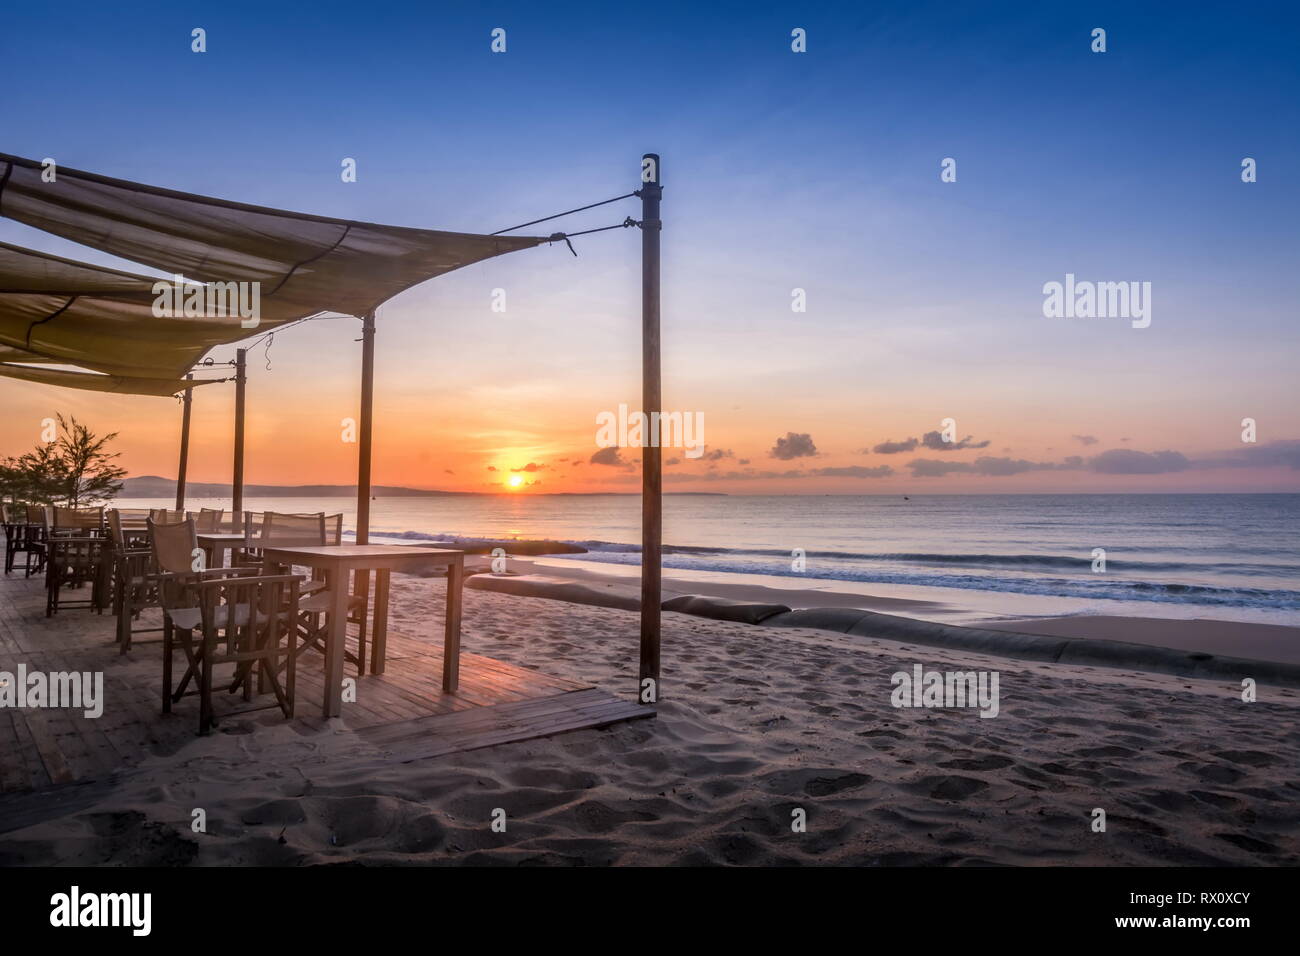 Paysage Tropical beach resort avec chaise, des parasols et une terrasse au lever du soleil Banque D'Images